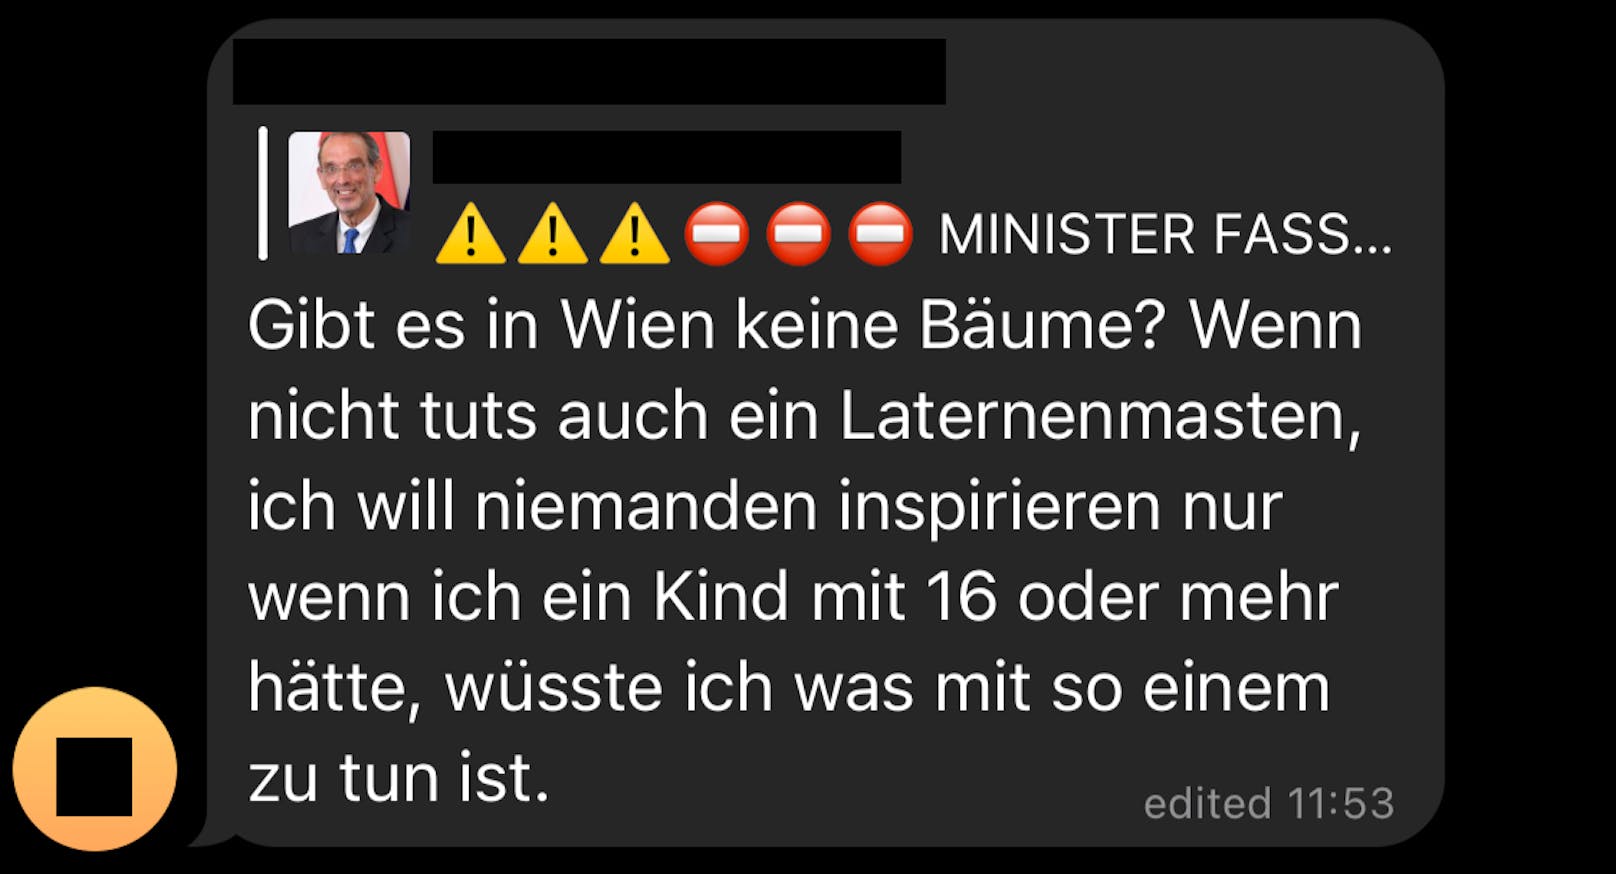 Die Nachricht über Bildungsminister Faßmann